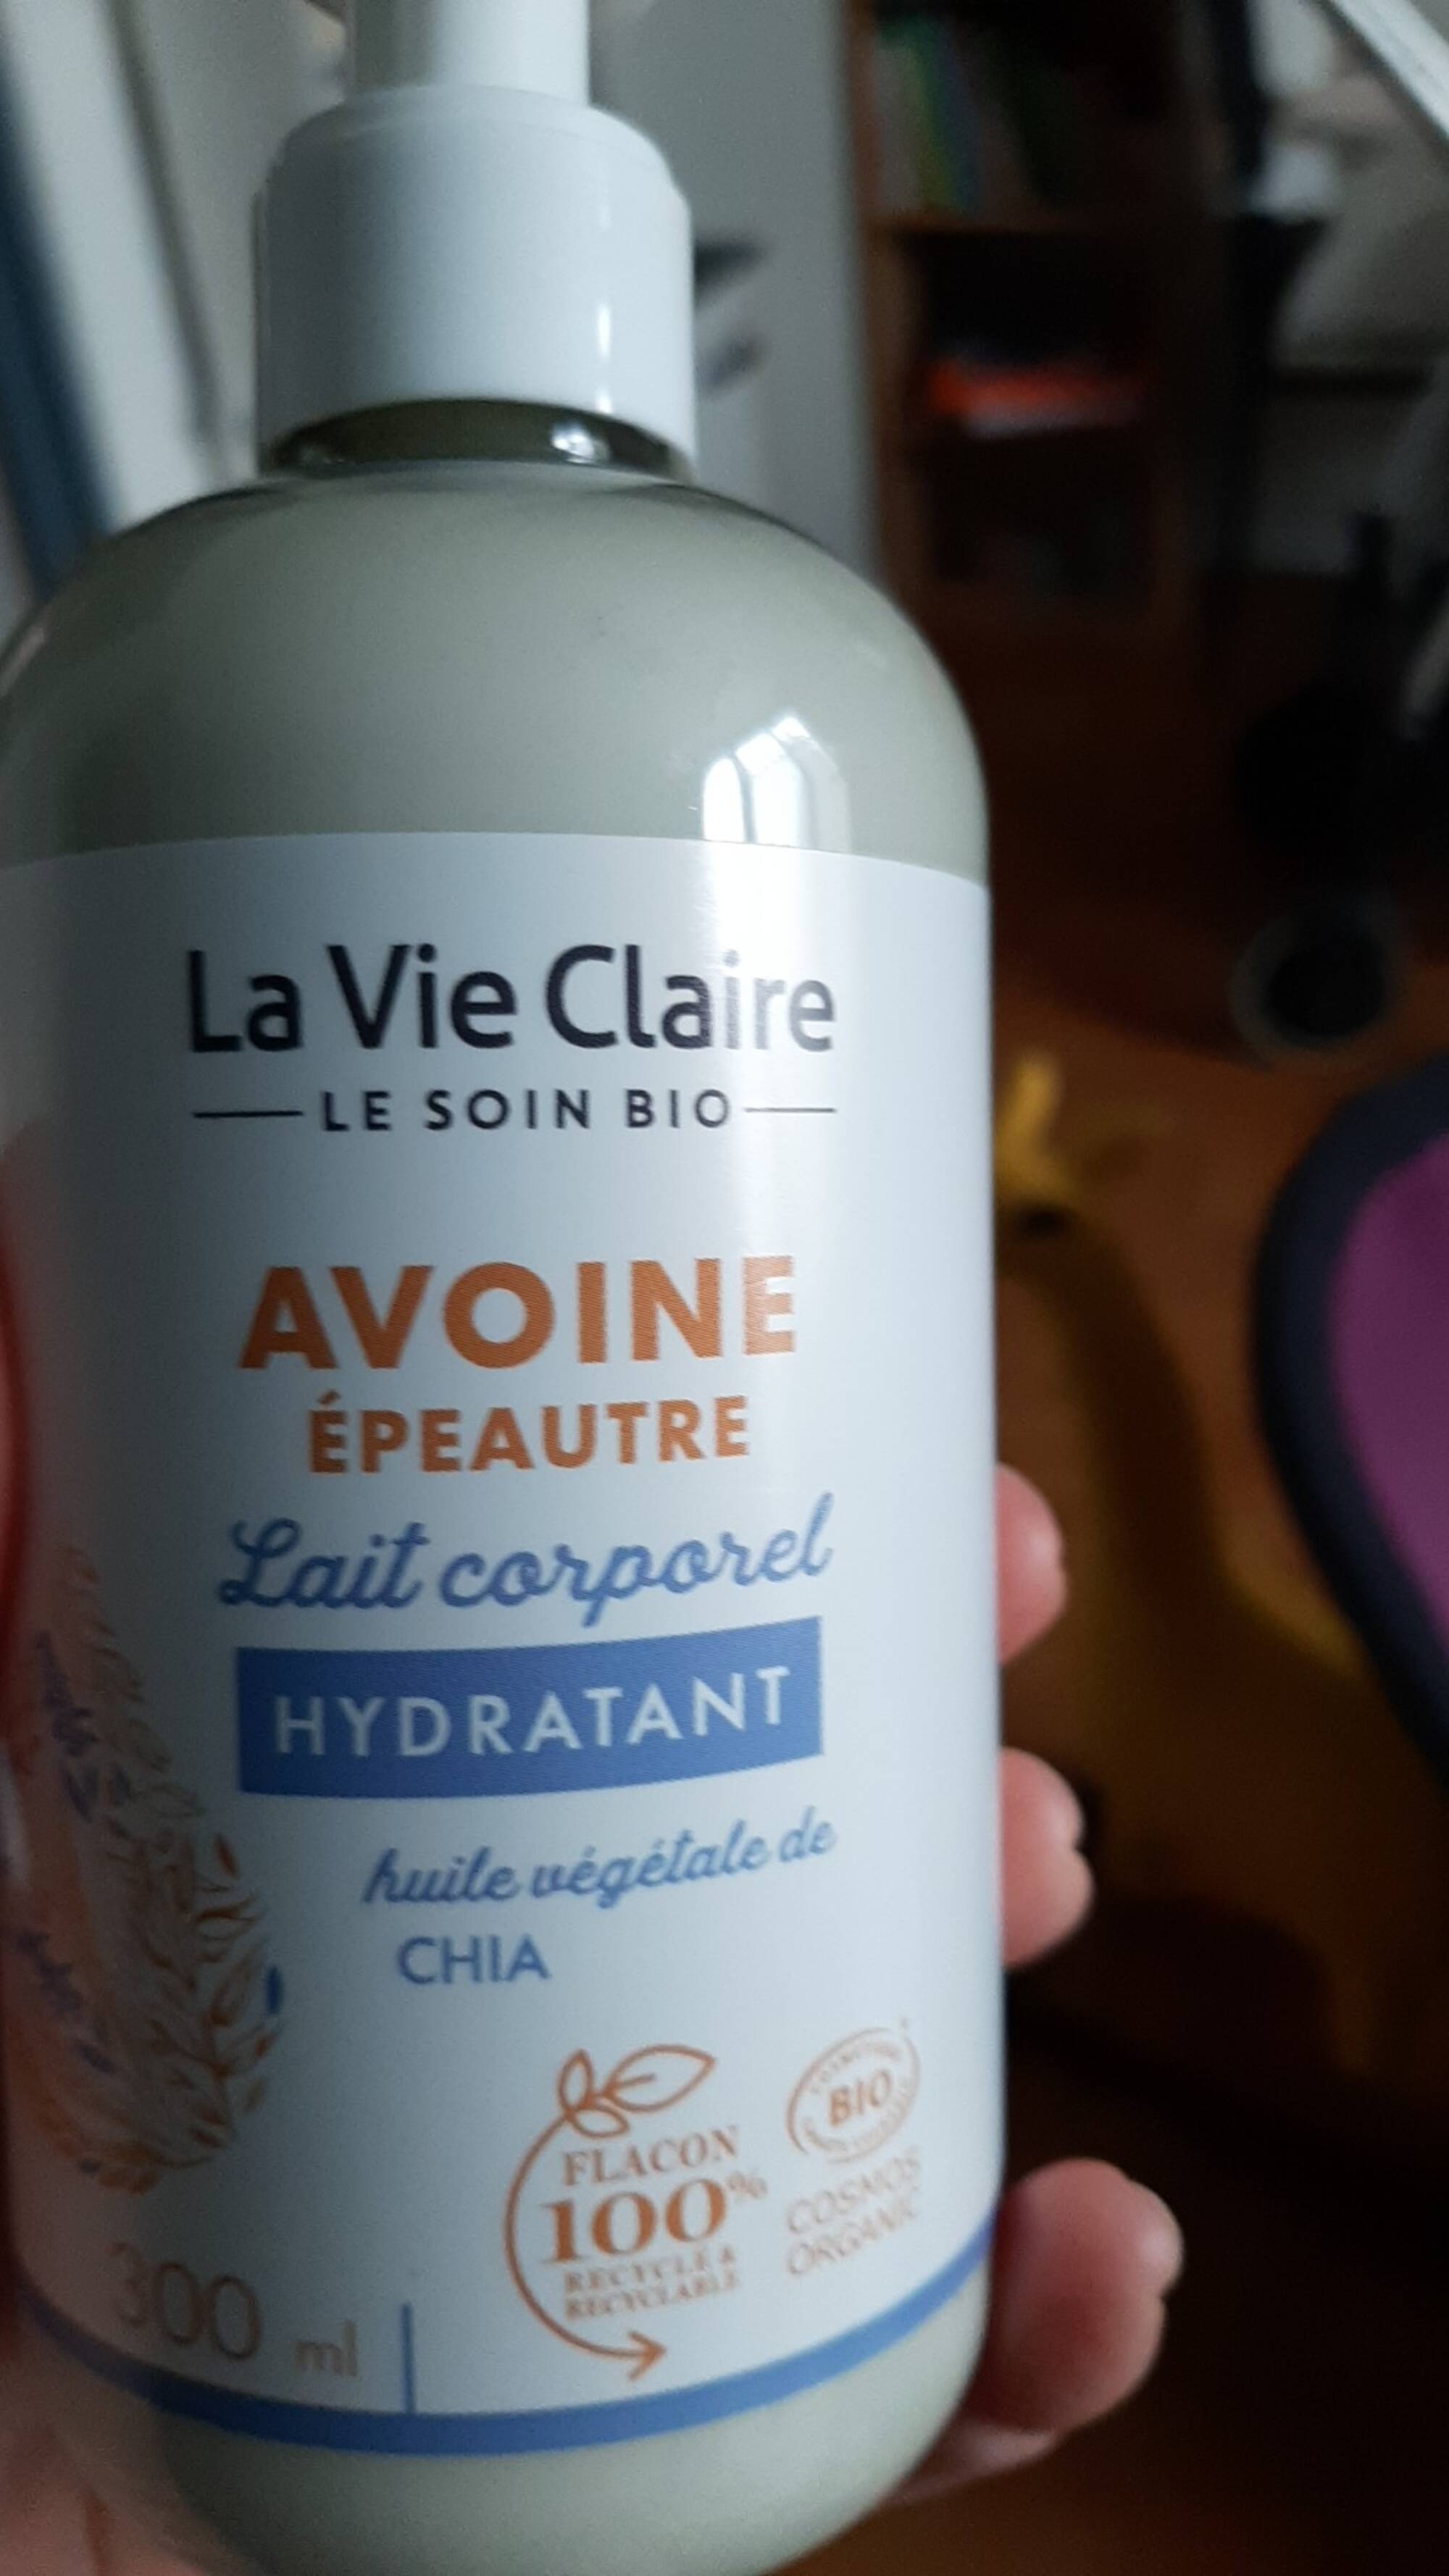 LA VIE CLAIRE - Avoine épeautre - Lait corporel hydratant